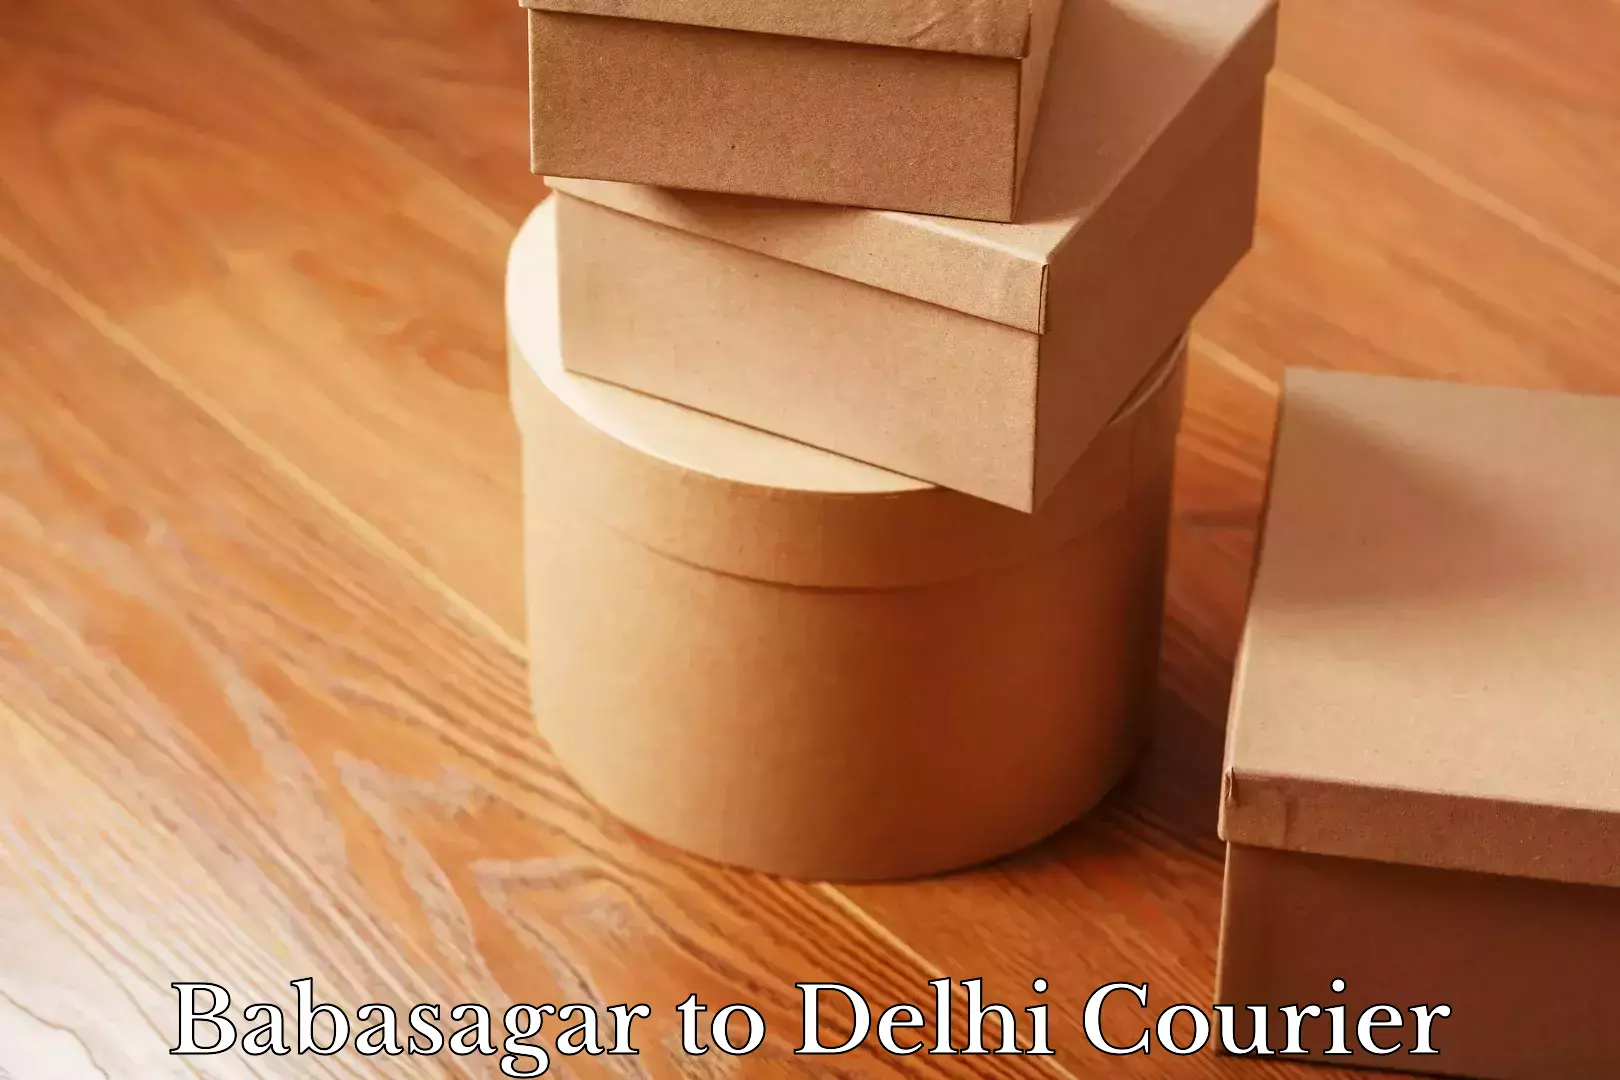 High-capacity parcel service Babasagar to Delhi